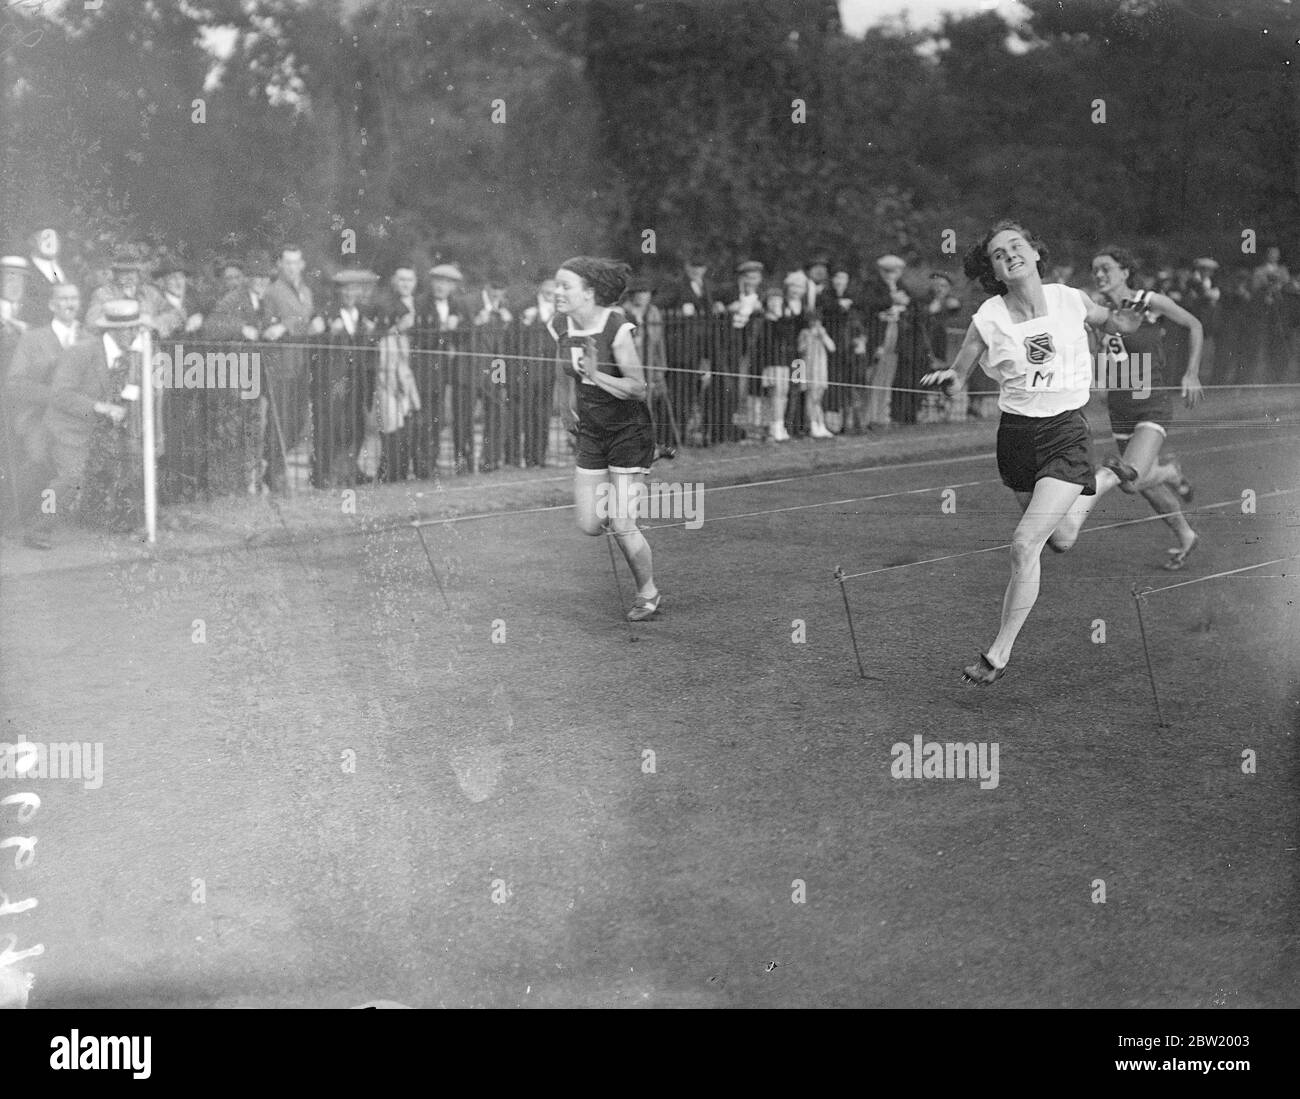 La Surrey County Women's amateur Athletic Association a rencontré la Middlesex County Women's Athletic Association dans un match intercomté à Battersea Park, Londres. Mlle D. Cook (Middlesex) a remporté la course de 100 mètres dans ce style spectaculaire de Miss B. Burke (Surrey), la championne sud-africaine. 20 juillet 1937 Banque D'Images